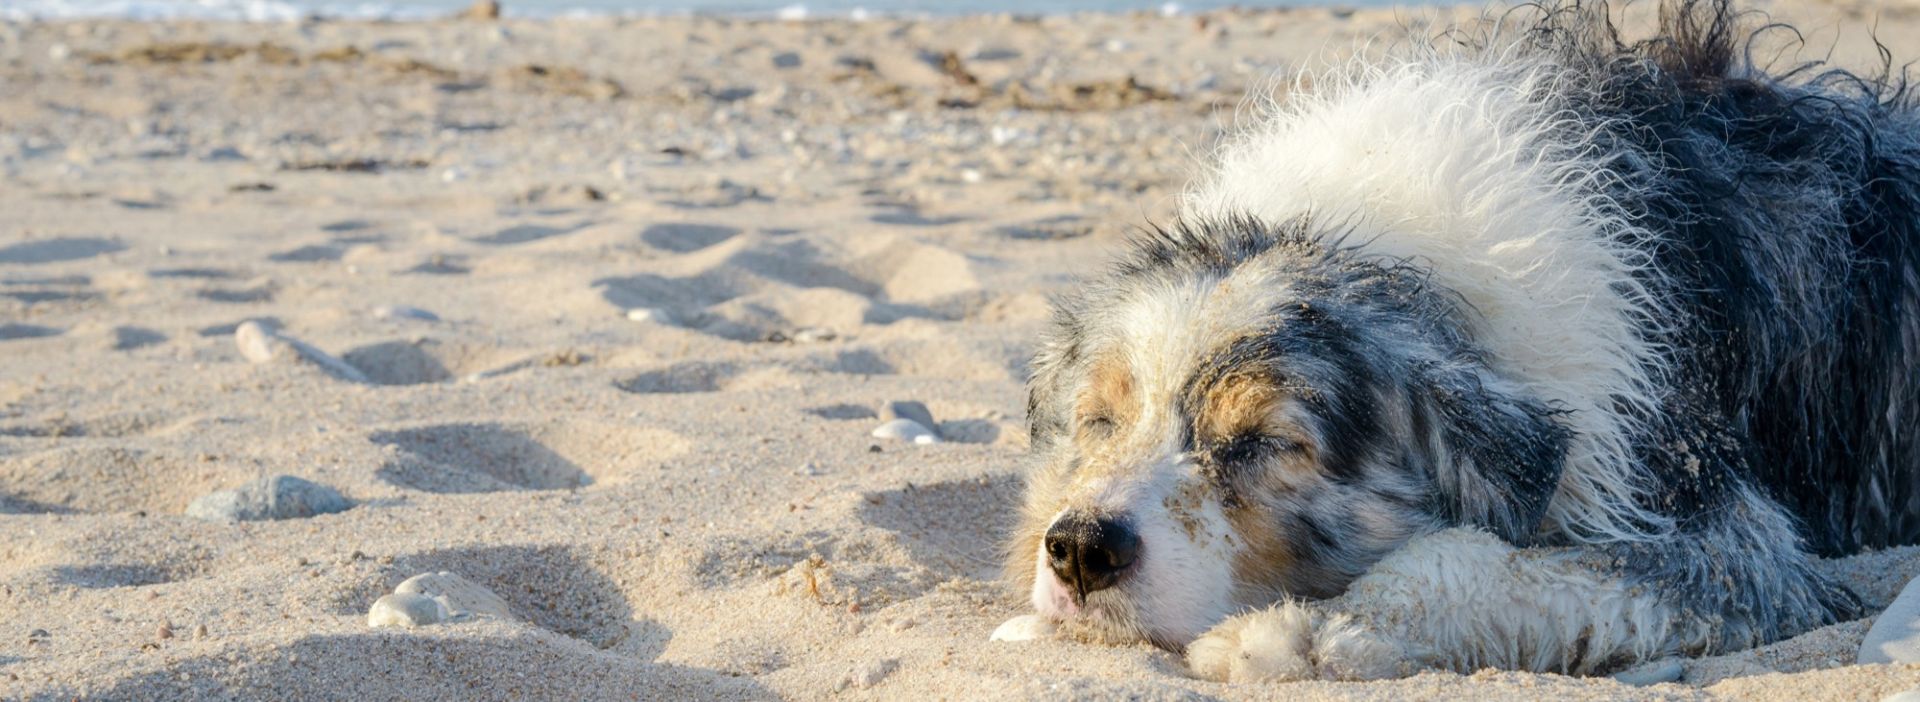 Hund schläft und entspannt am Strand